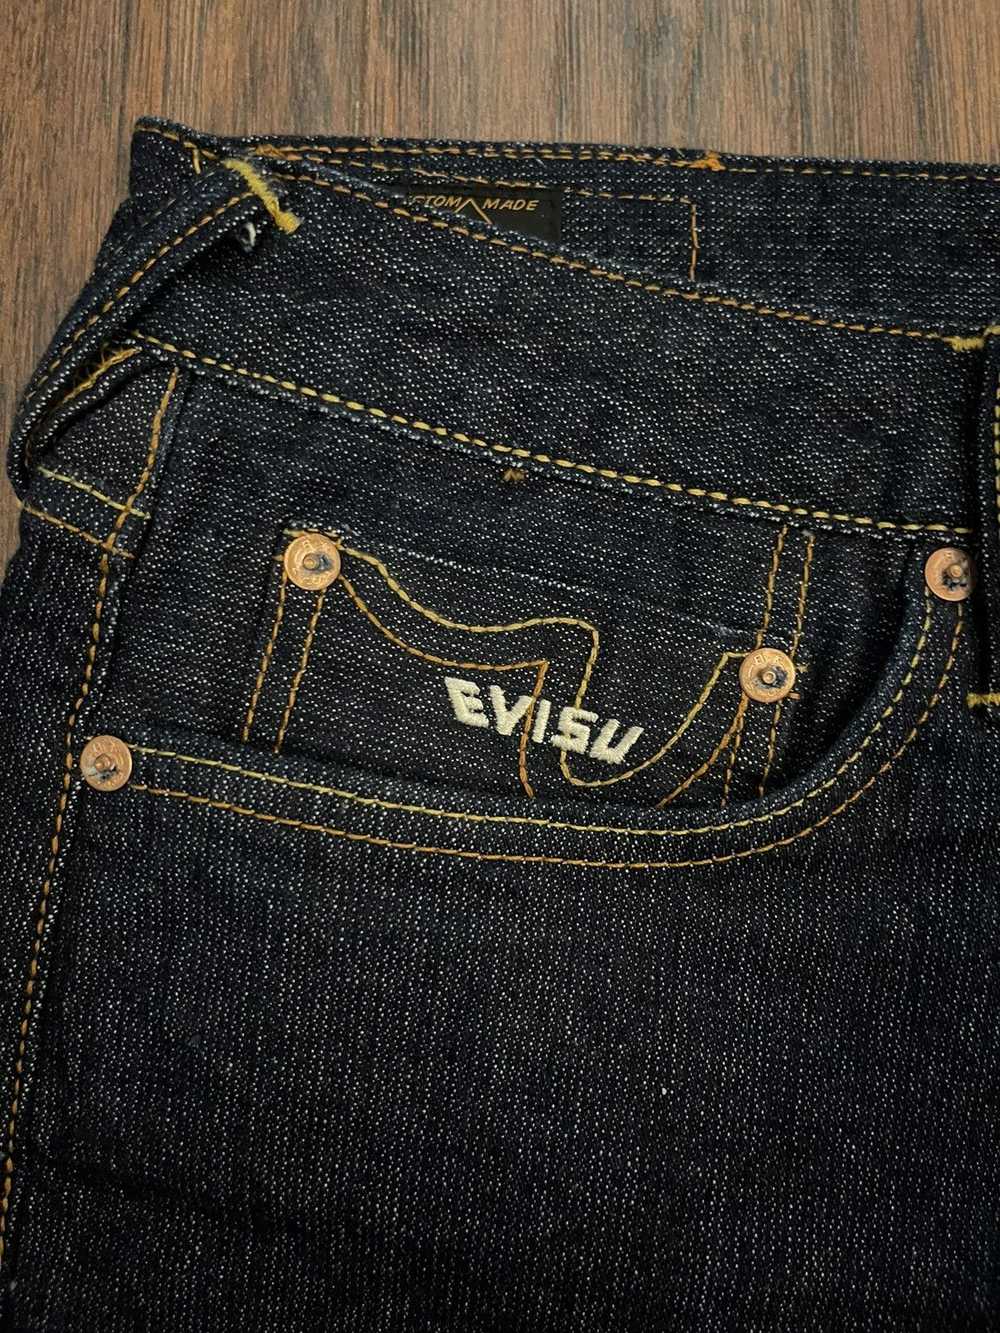 Evisu Evisu Daicock Carrot Fit Jeans - image 4